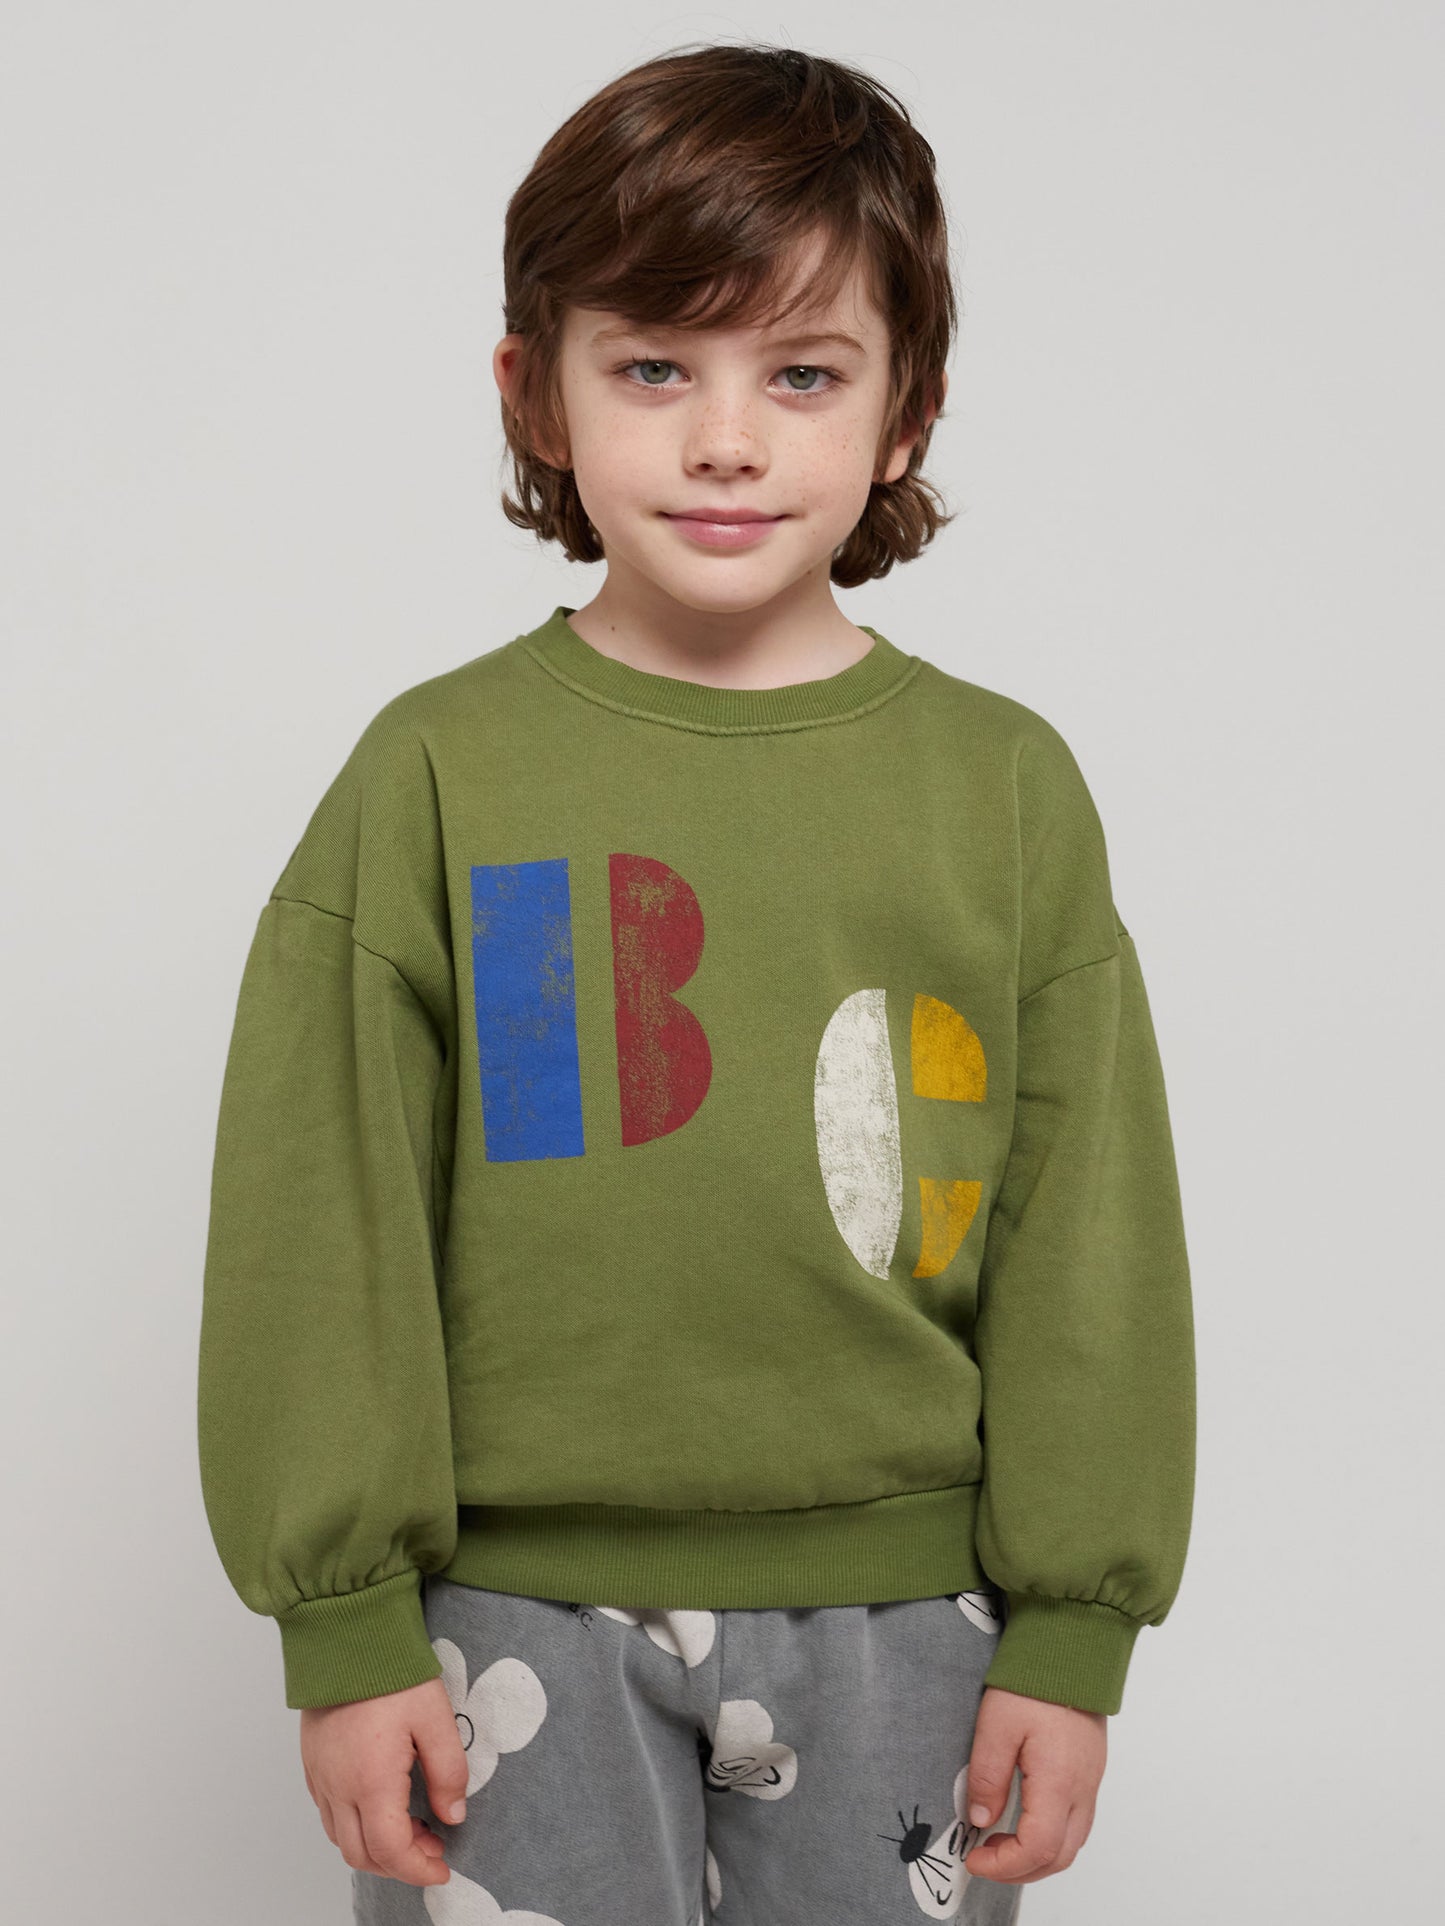 Multicolor B.C sweatshirt